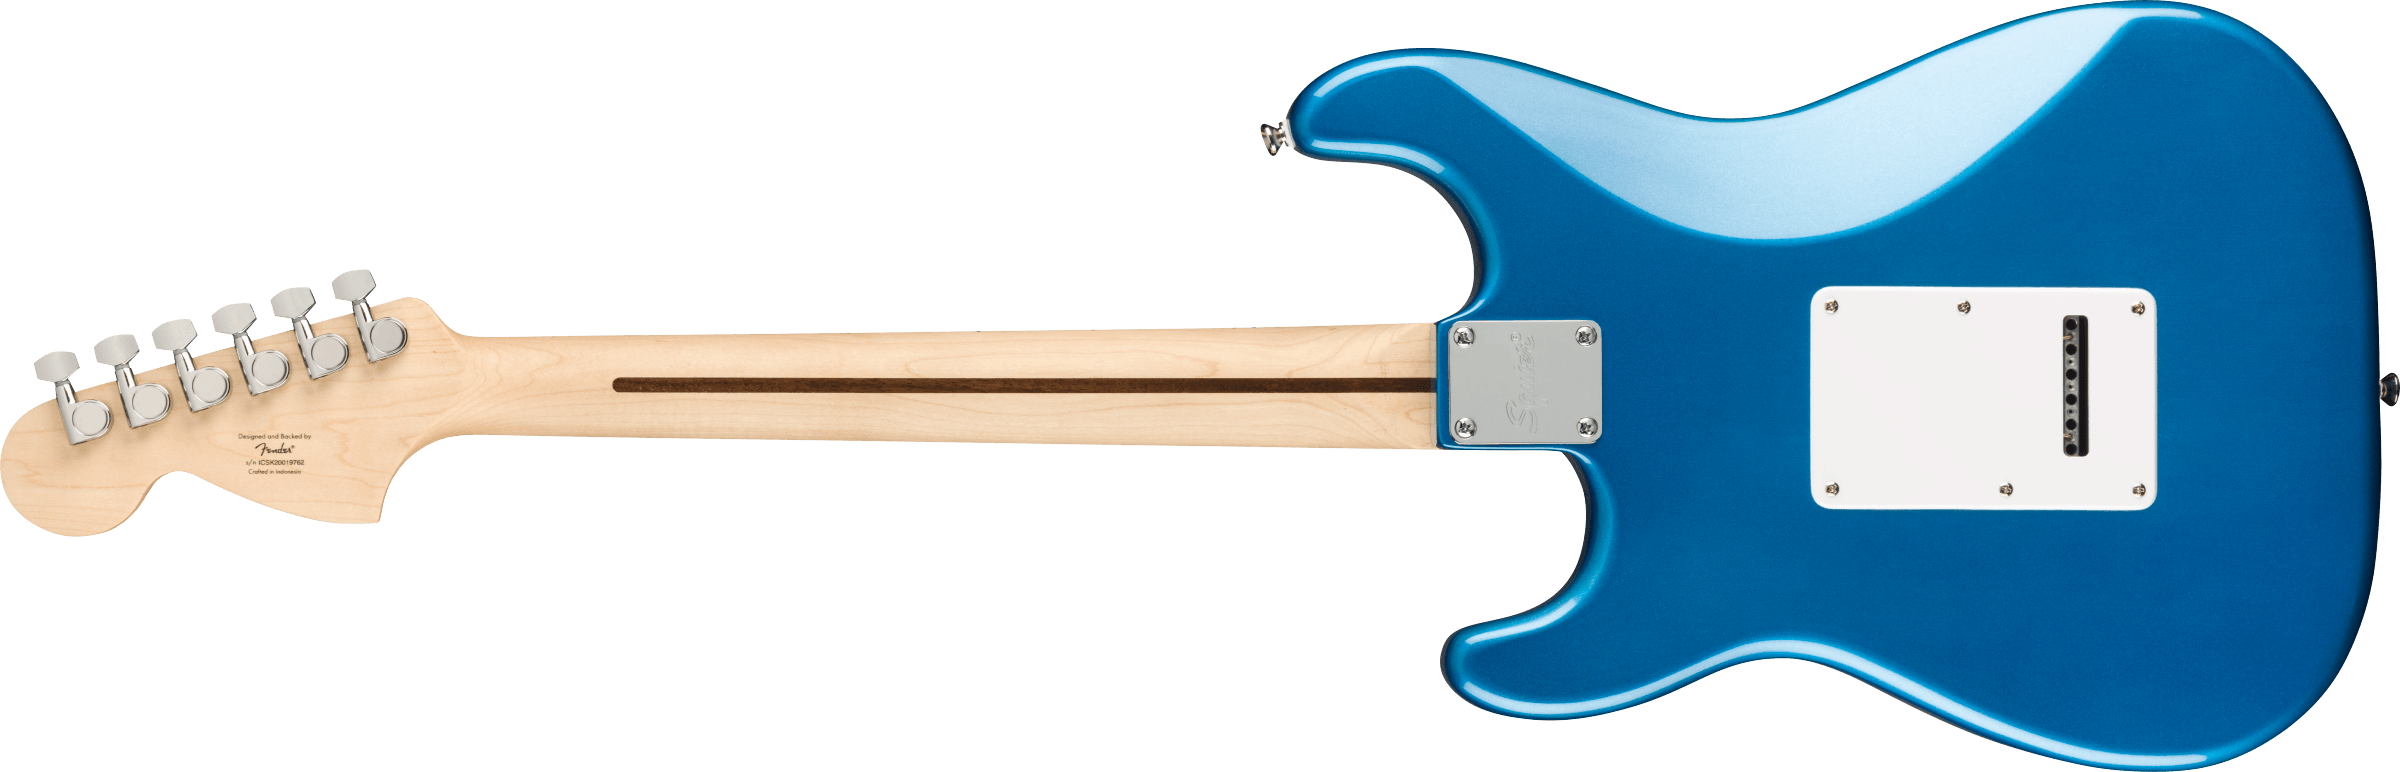 Squier Strat Affinity Hss Pack +fender Frontman 15g 2021 Trem Mn - Lake Placid Blue - Packs guitarra eléctrica - Variation 2